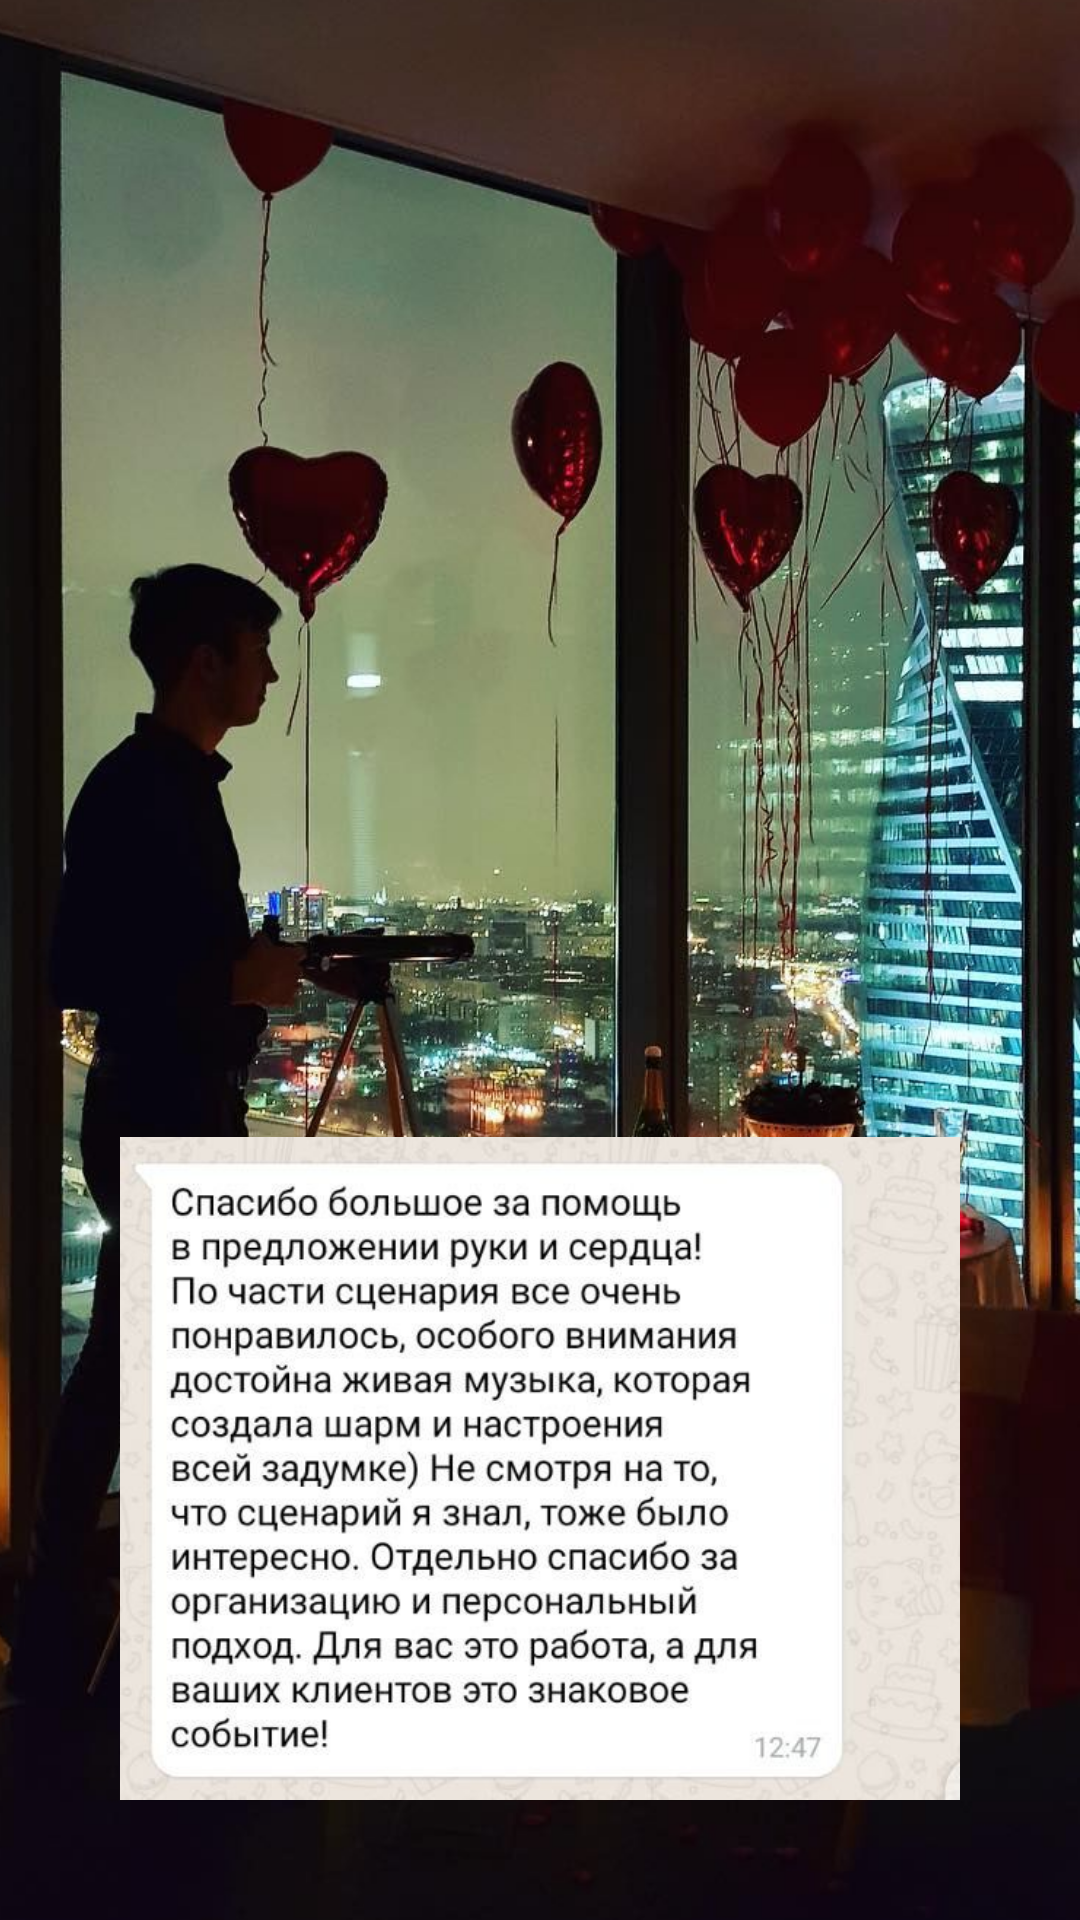 Организация предложения руки и сердца в Архангельске
от компании Pandaevent